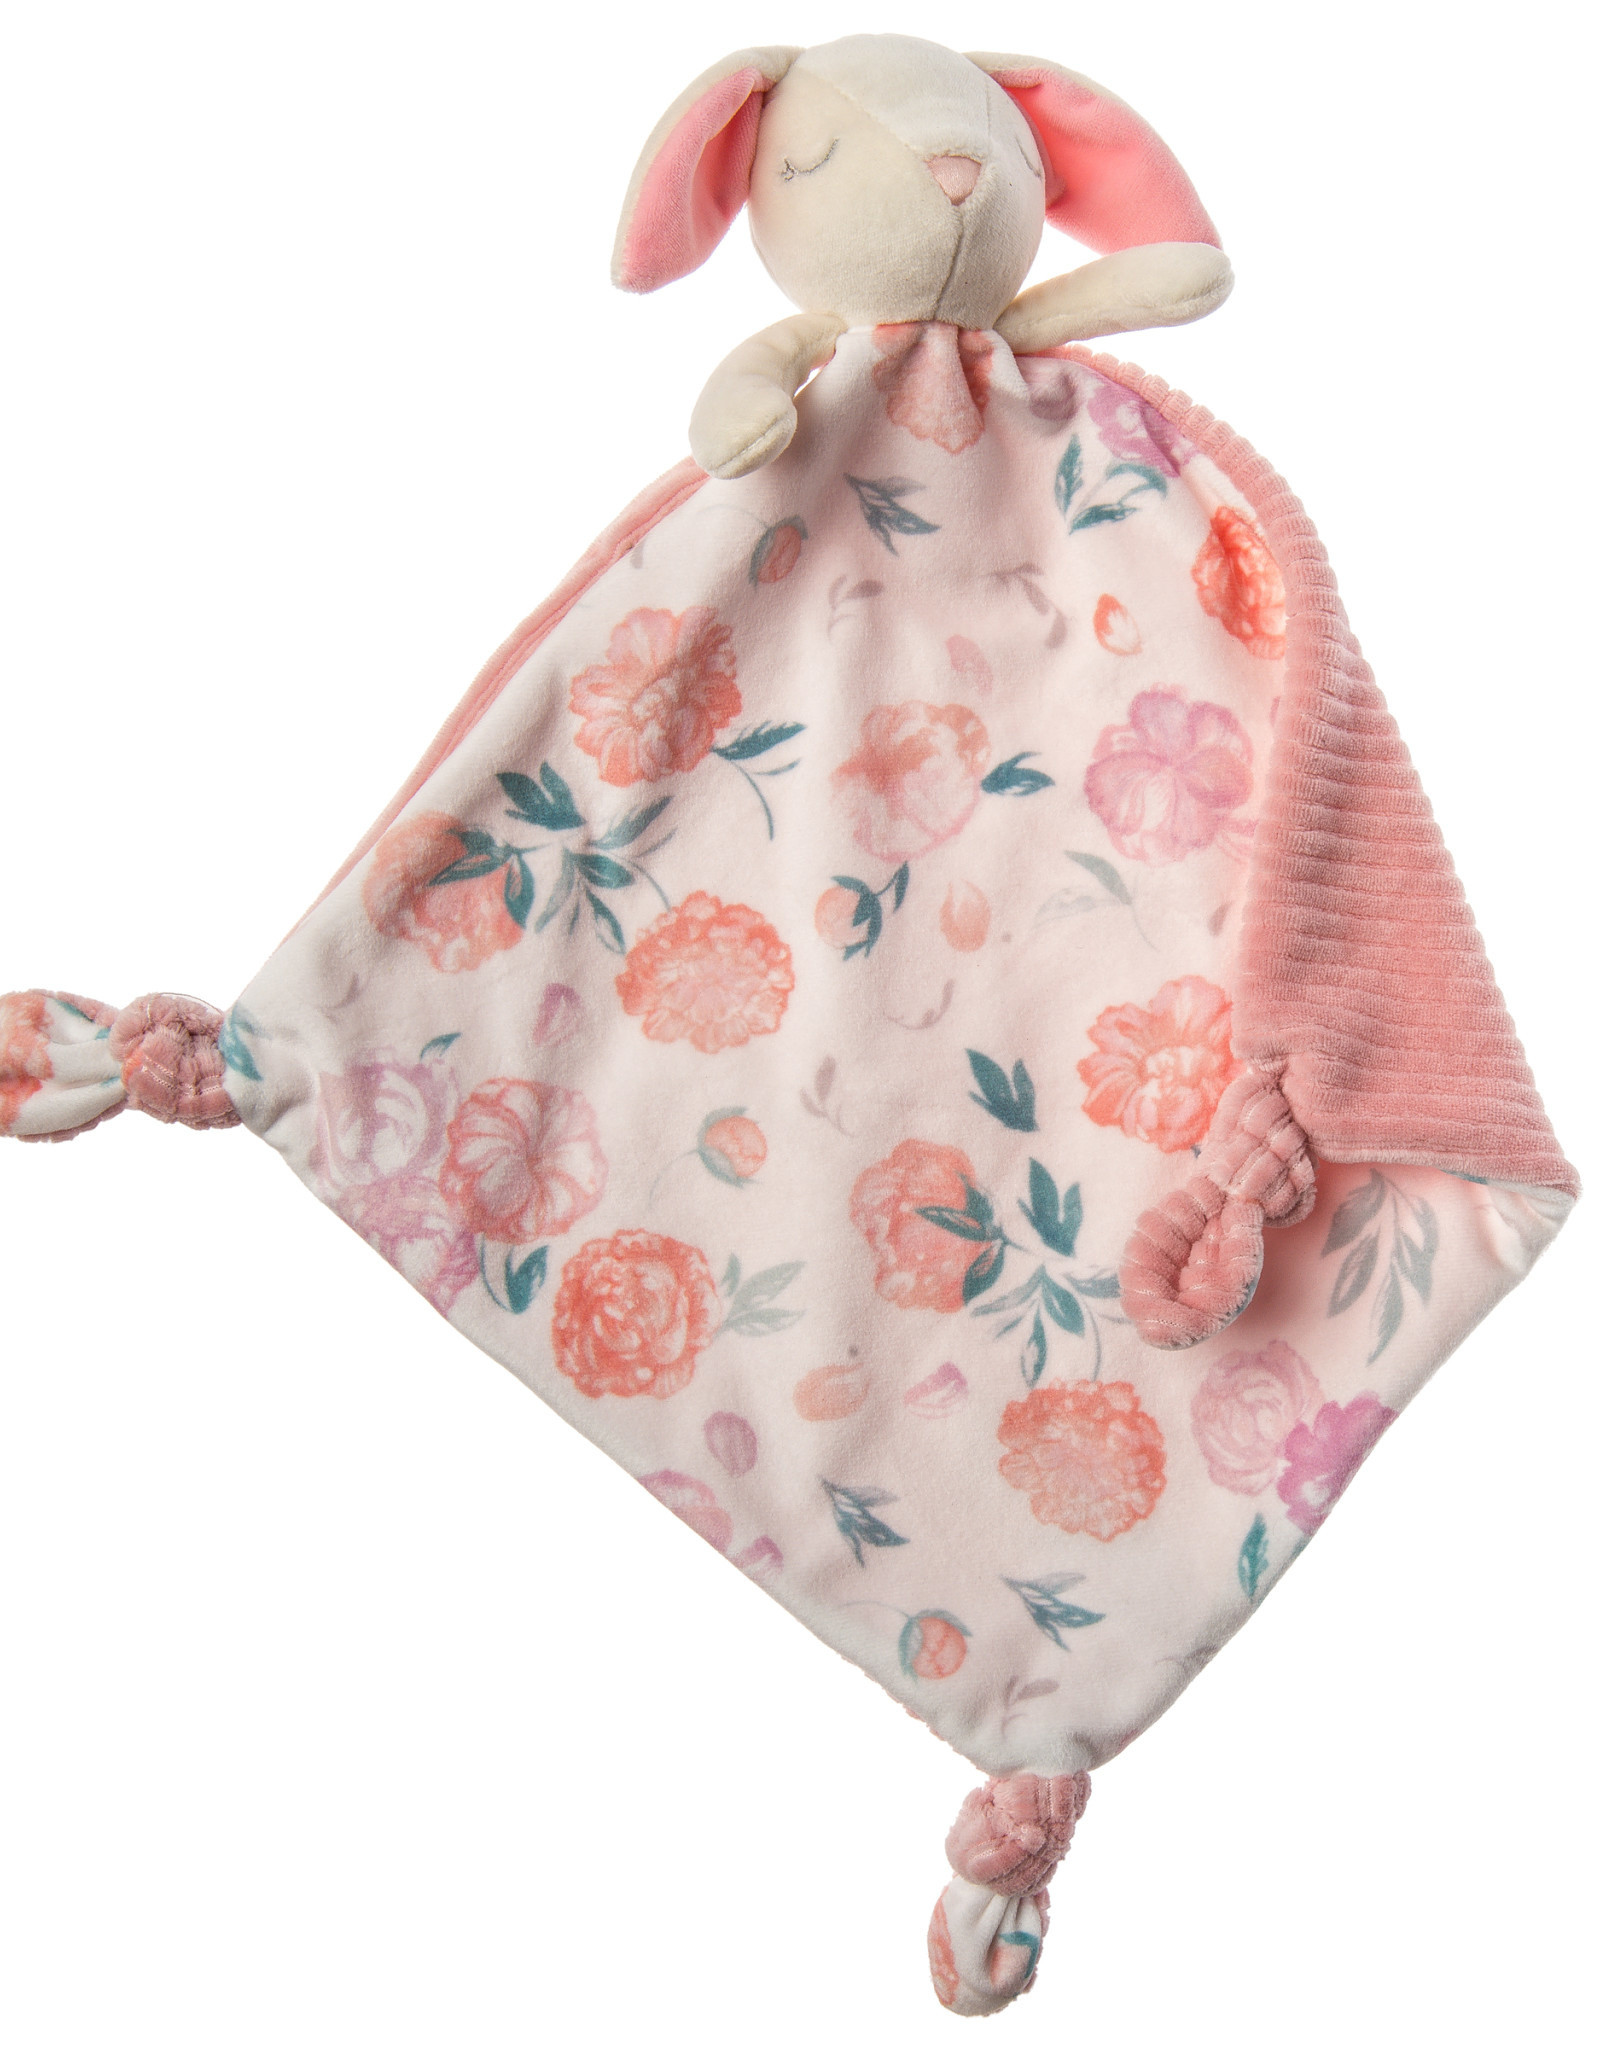 Kids Mary Meyer Little Knottie Blanket - Bunny